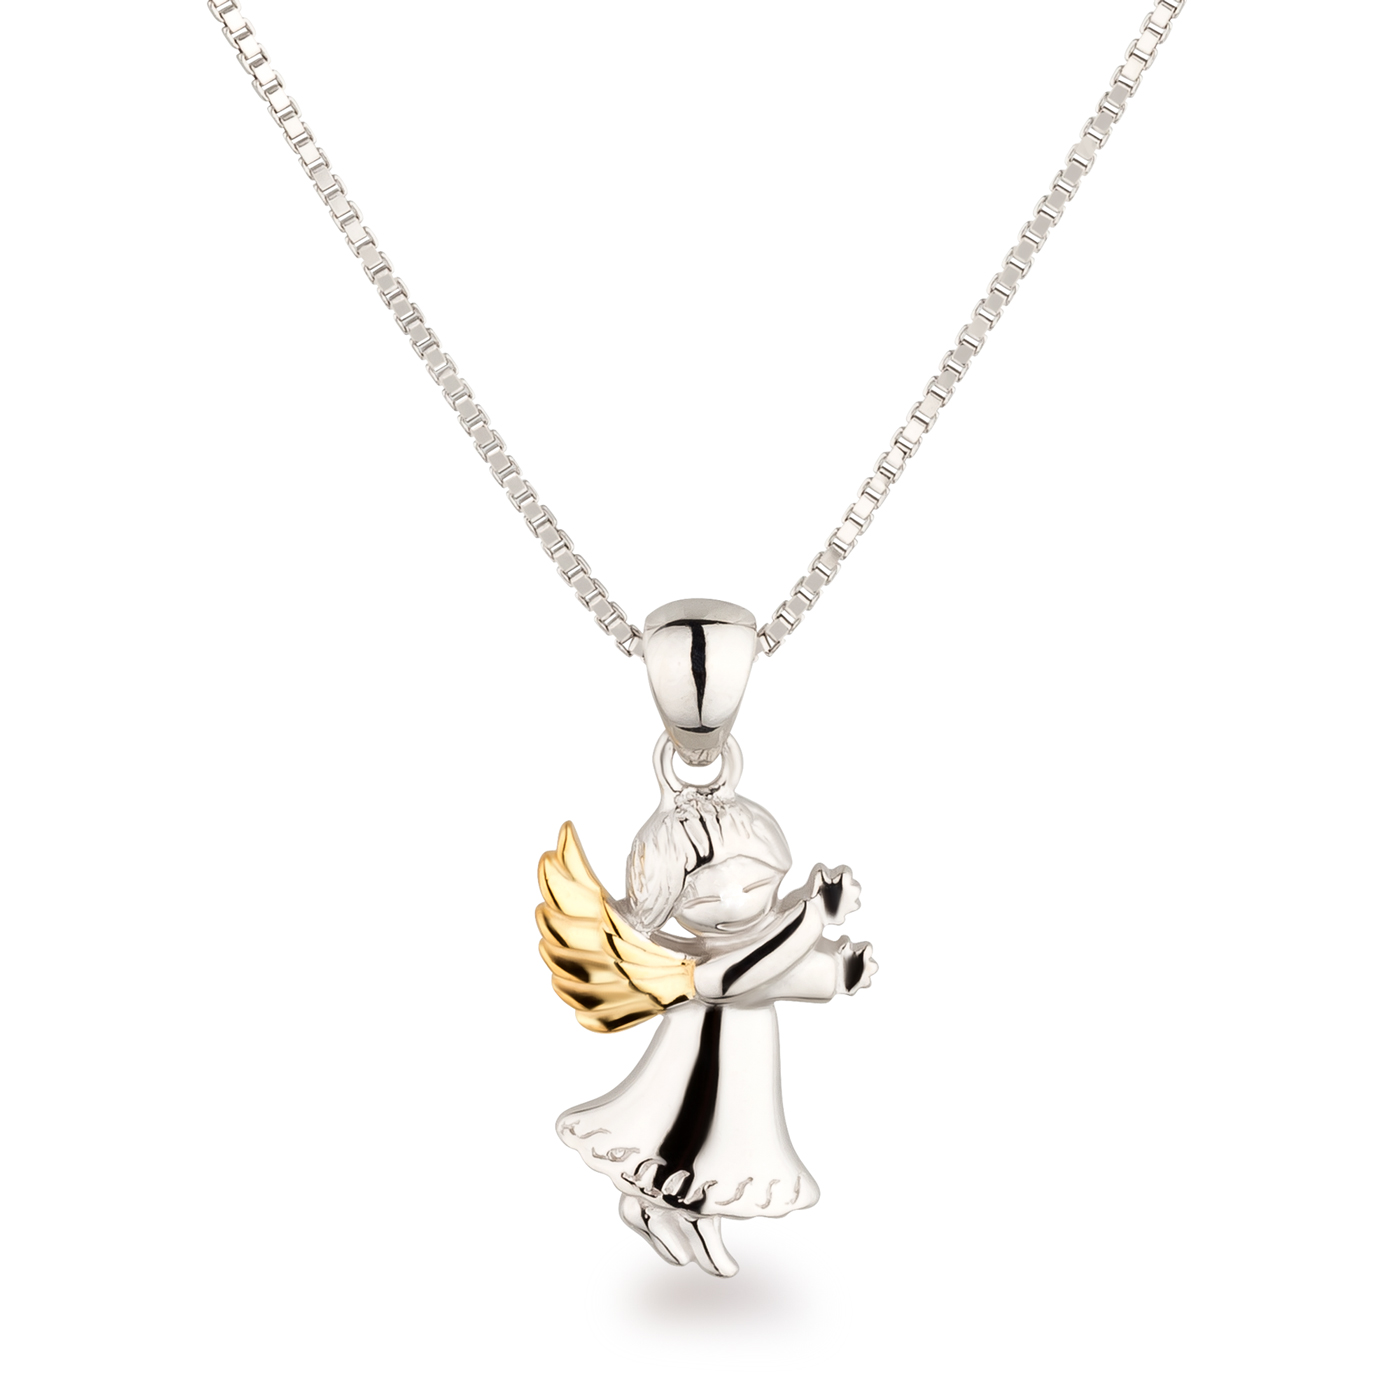 Engel 925 teilvergoldet Silber Halskette Schutzengel